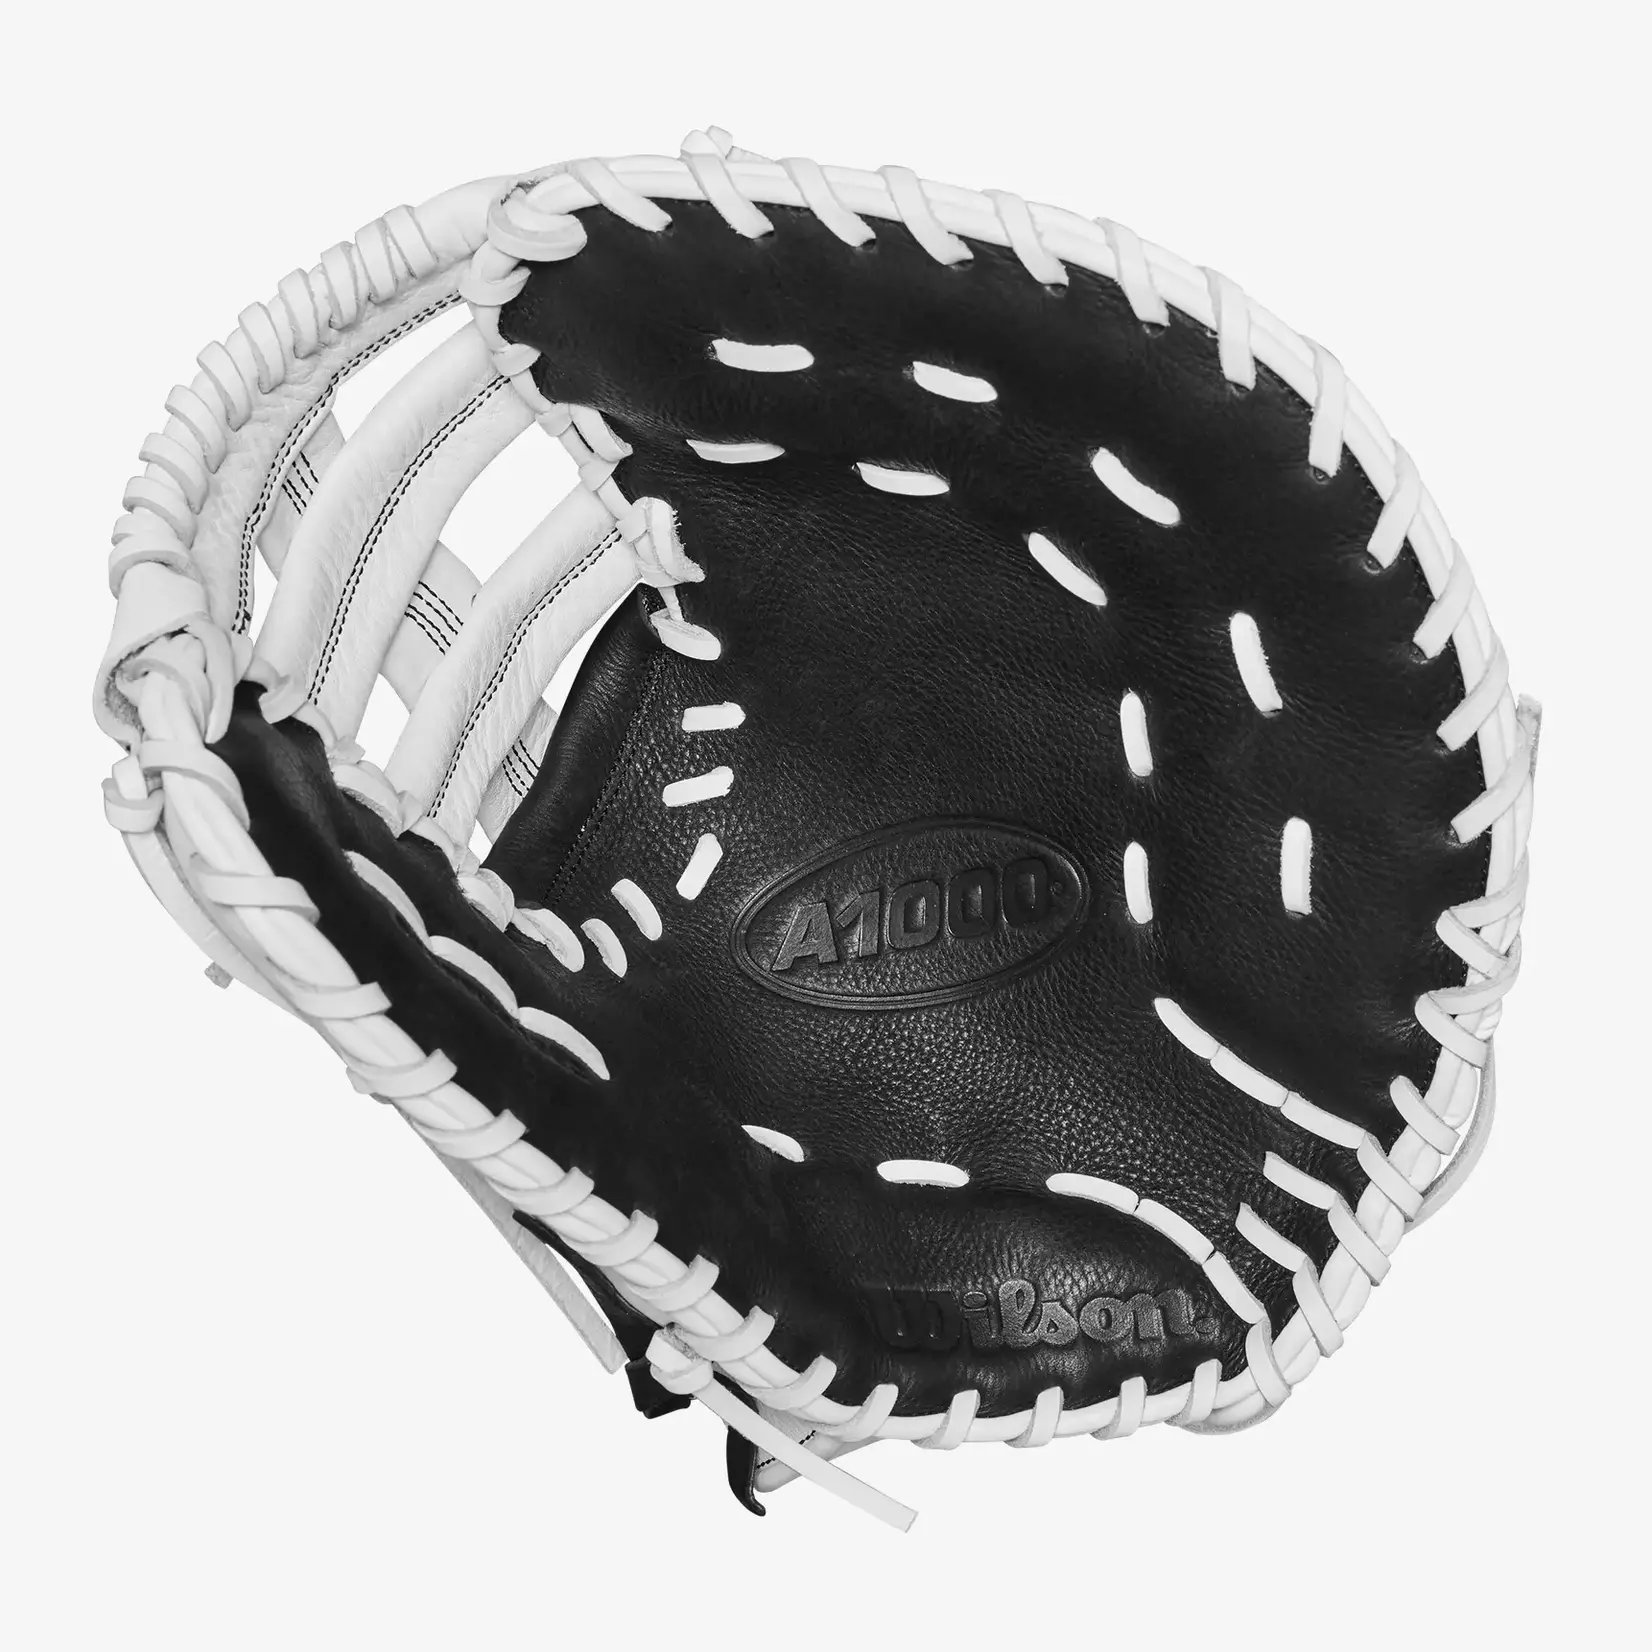 Wilson Wilson Baseball Glove, A1000 1620, Reg, 12.5", Fastpitch, First Base Pattern, Blk/Wht